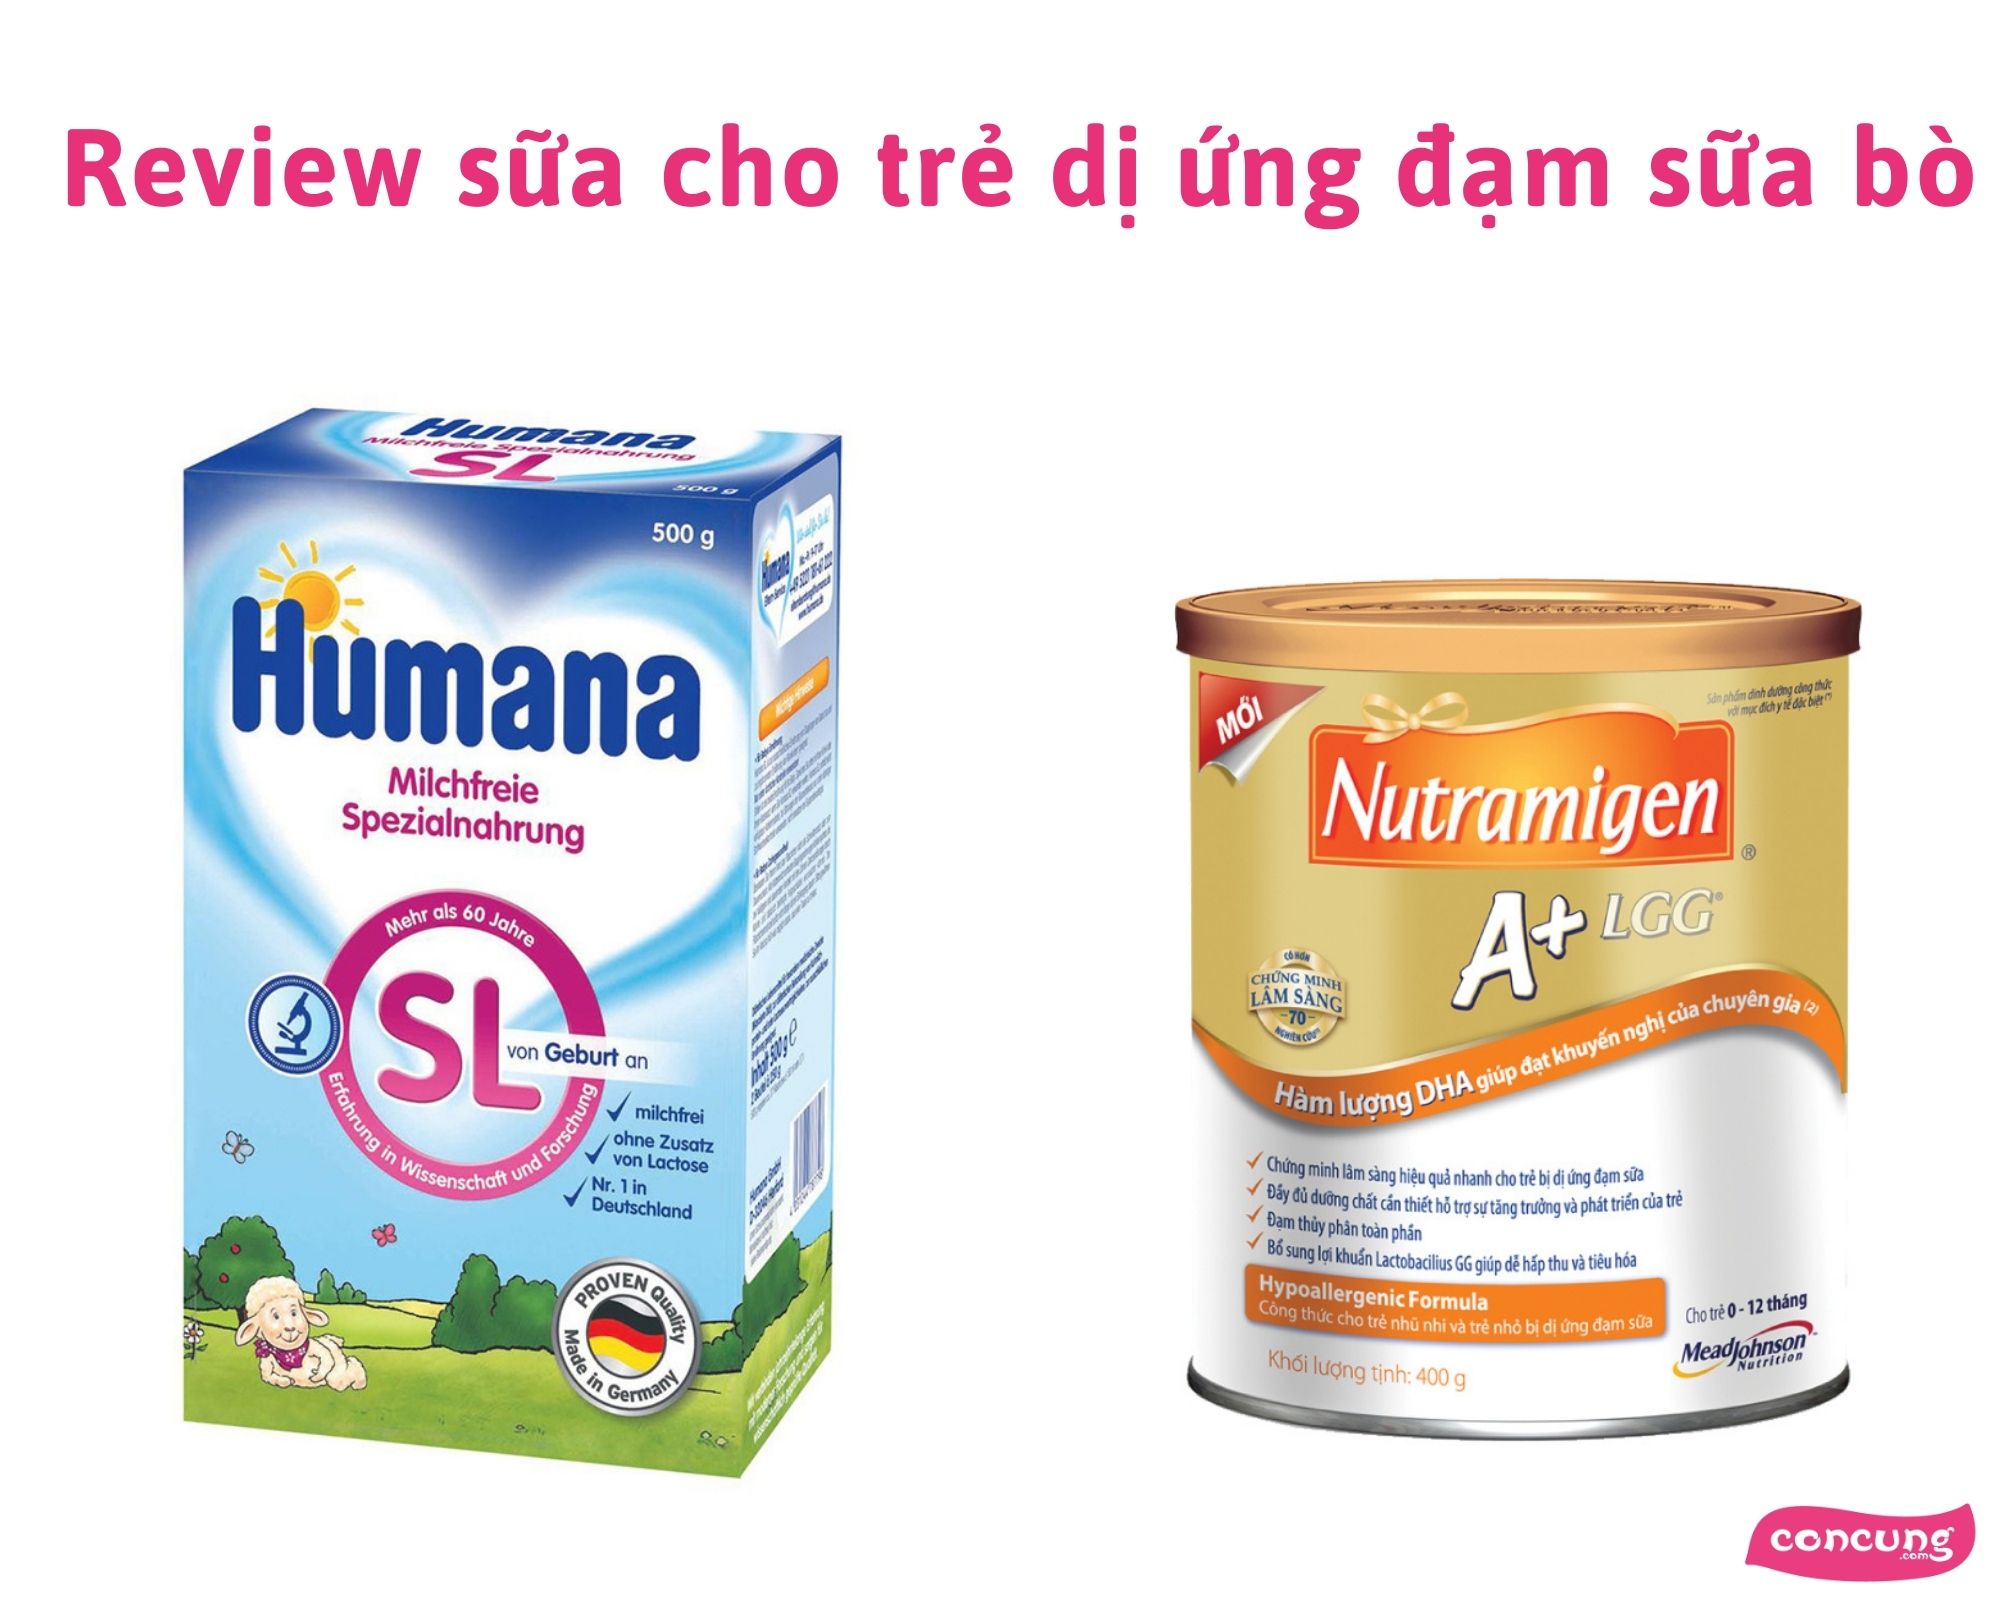 Review sữa Enfa Nutramigen và Humana SL cho trẻ dị ứng đạm sữa bò